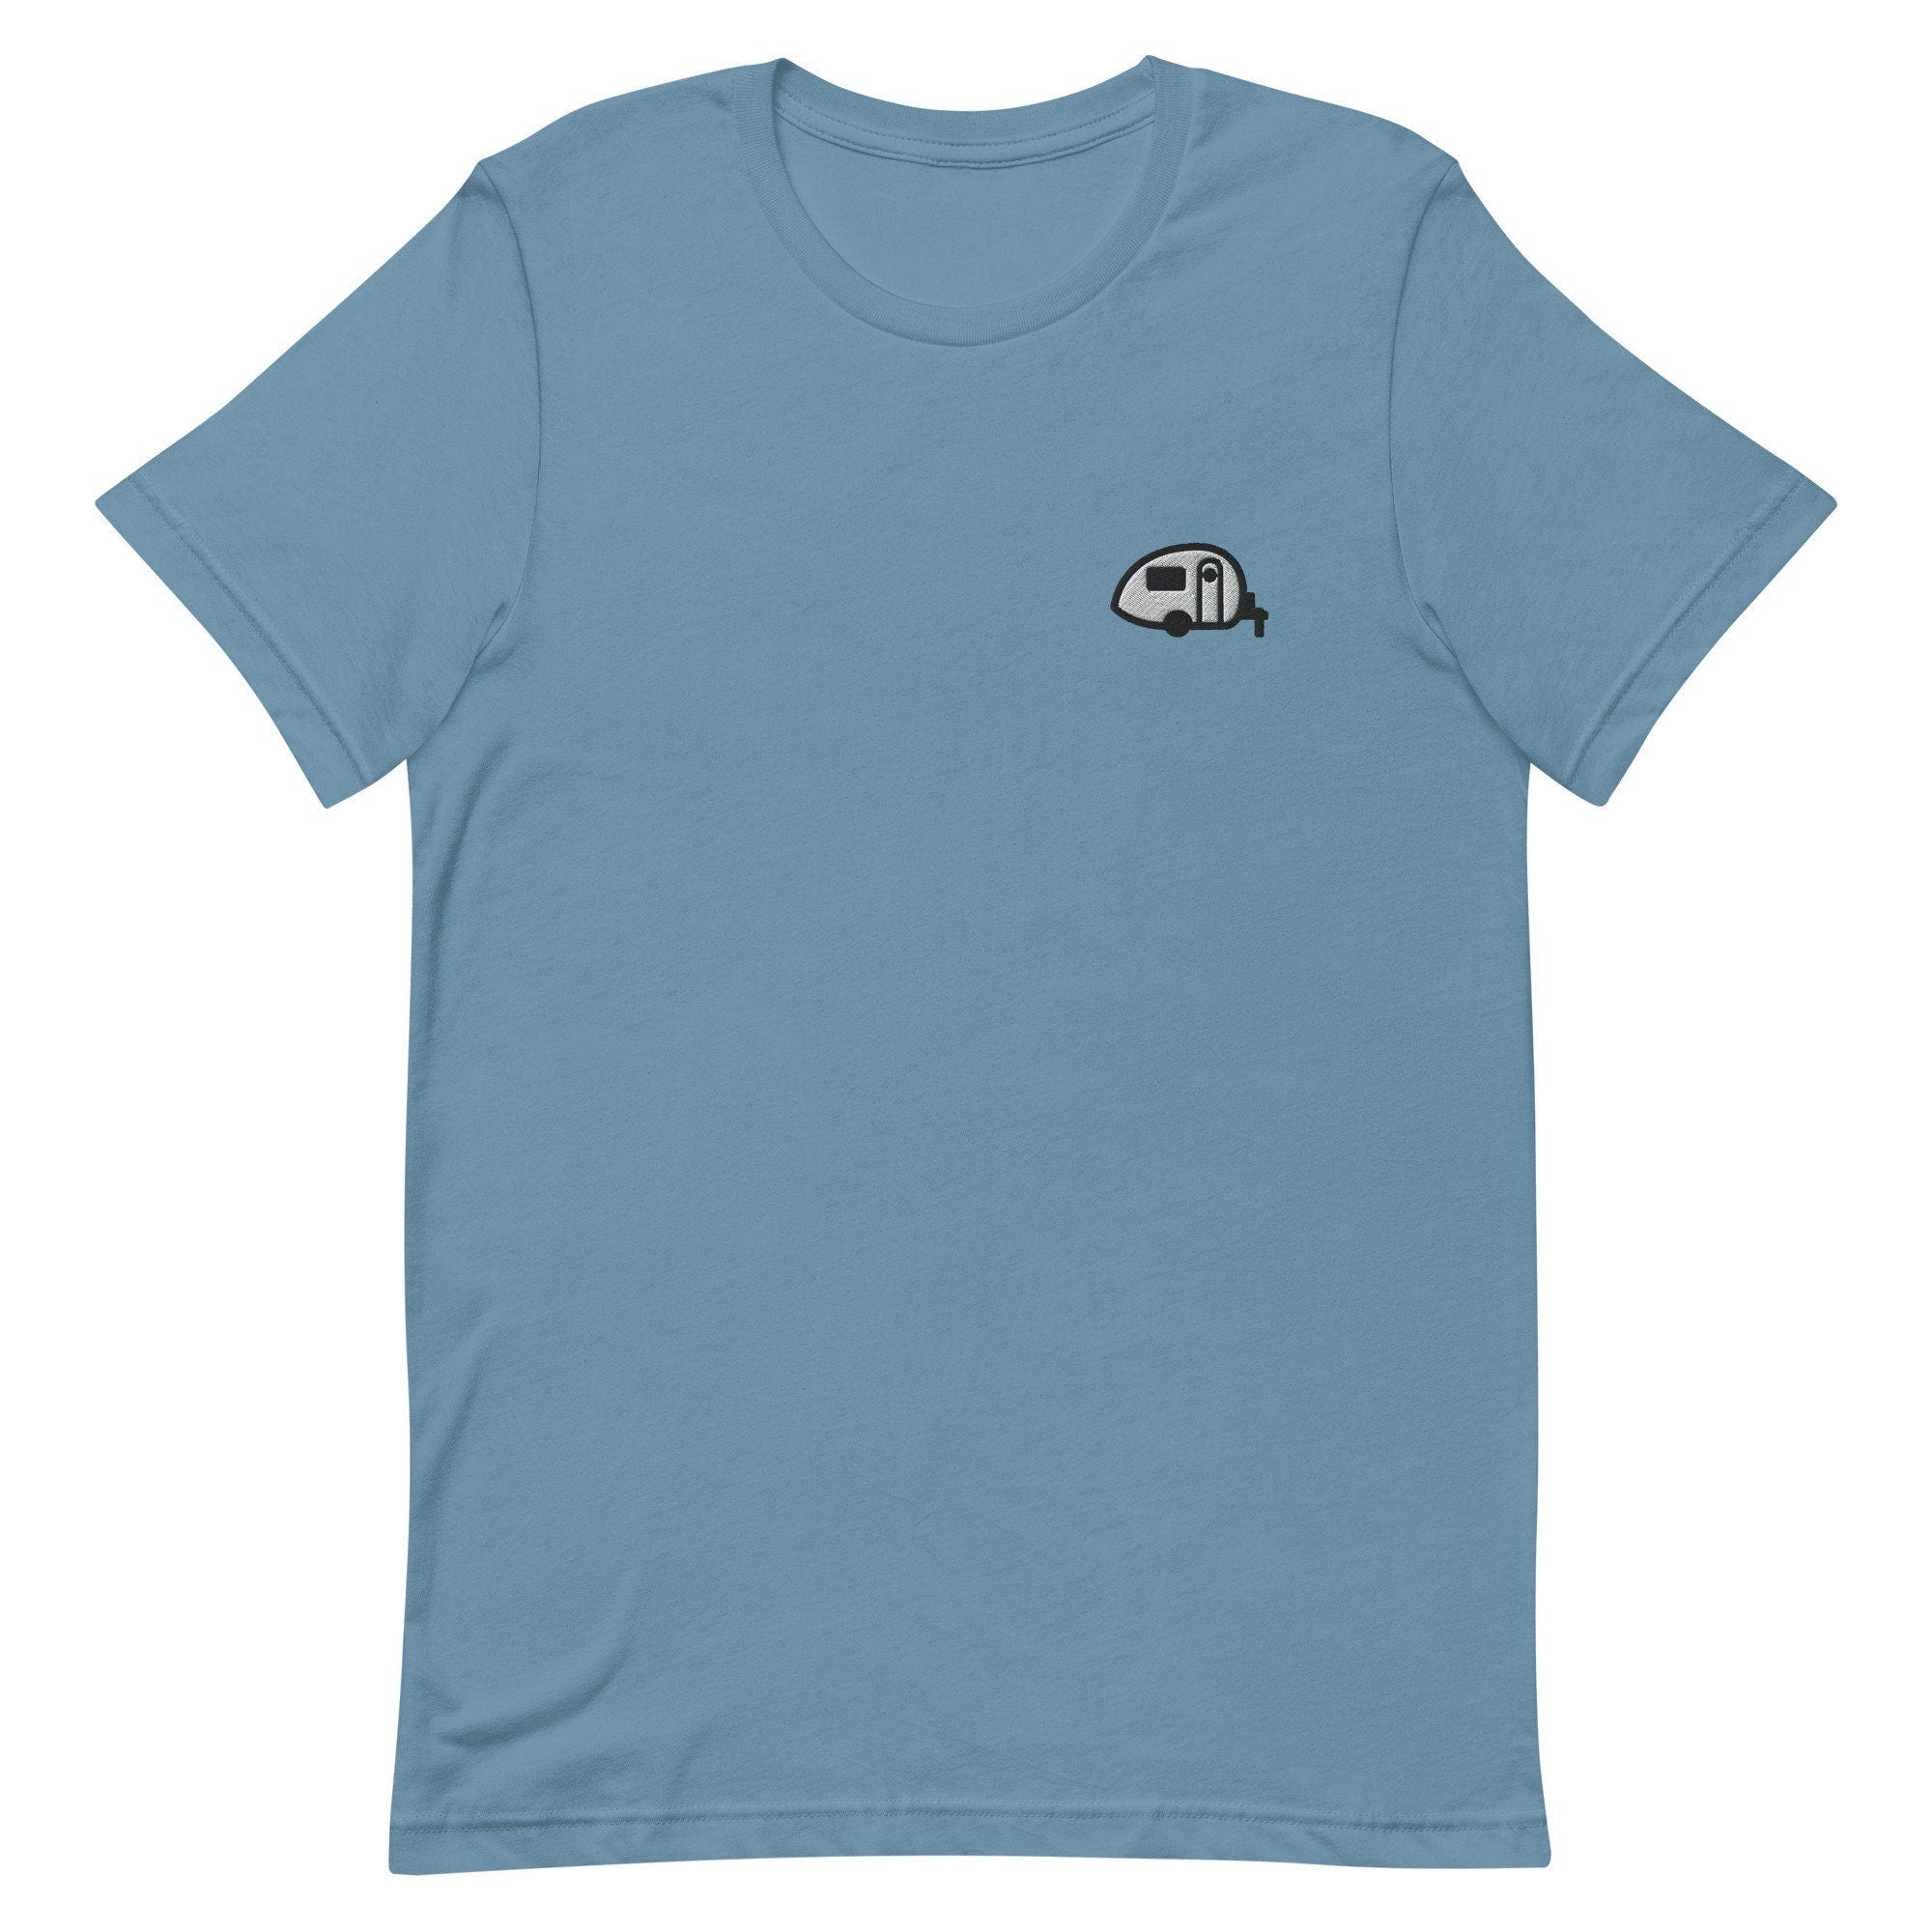 Teardrop Trailer Premium Men's T-Shirt, Embroidered Men's T-Shirt Gift for Boyfriend, Men's Short Sleeve Shirt - Multiple Colors